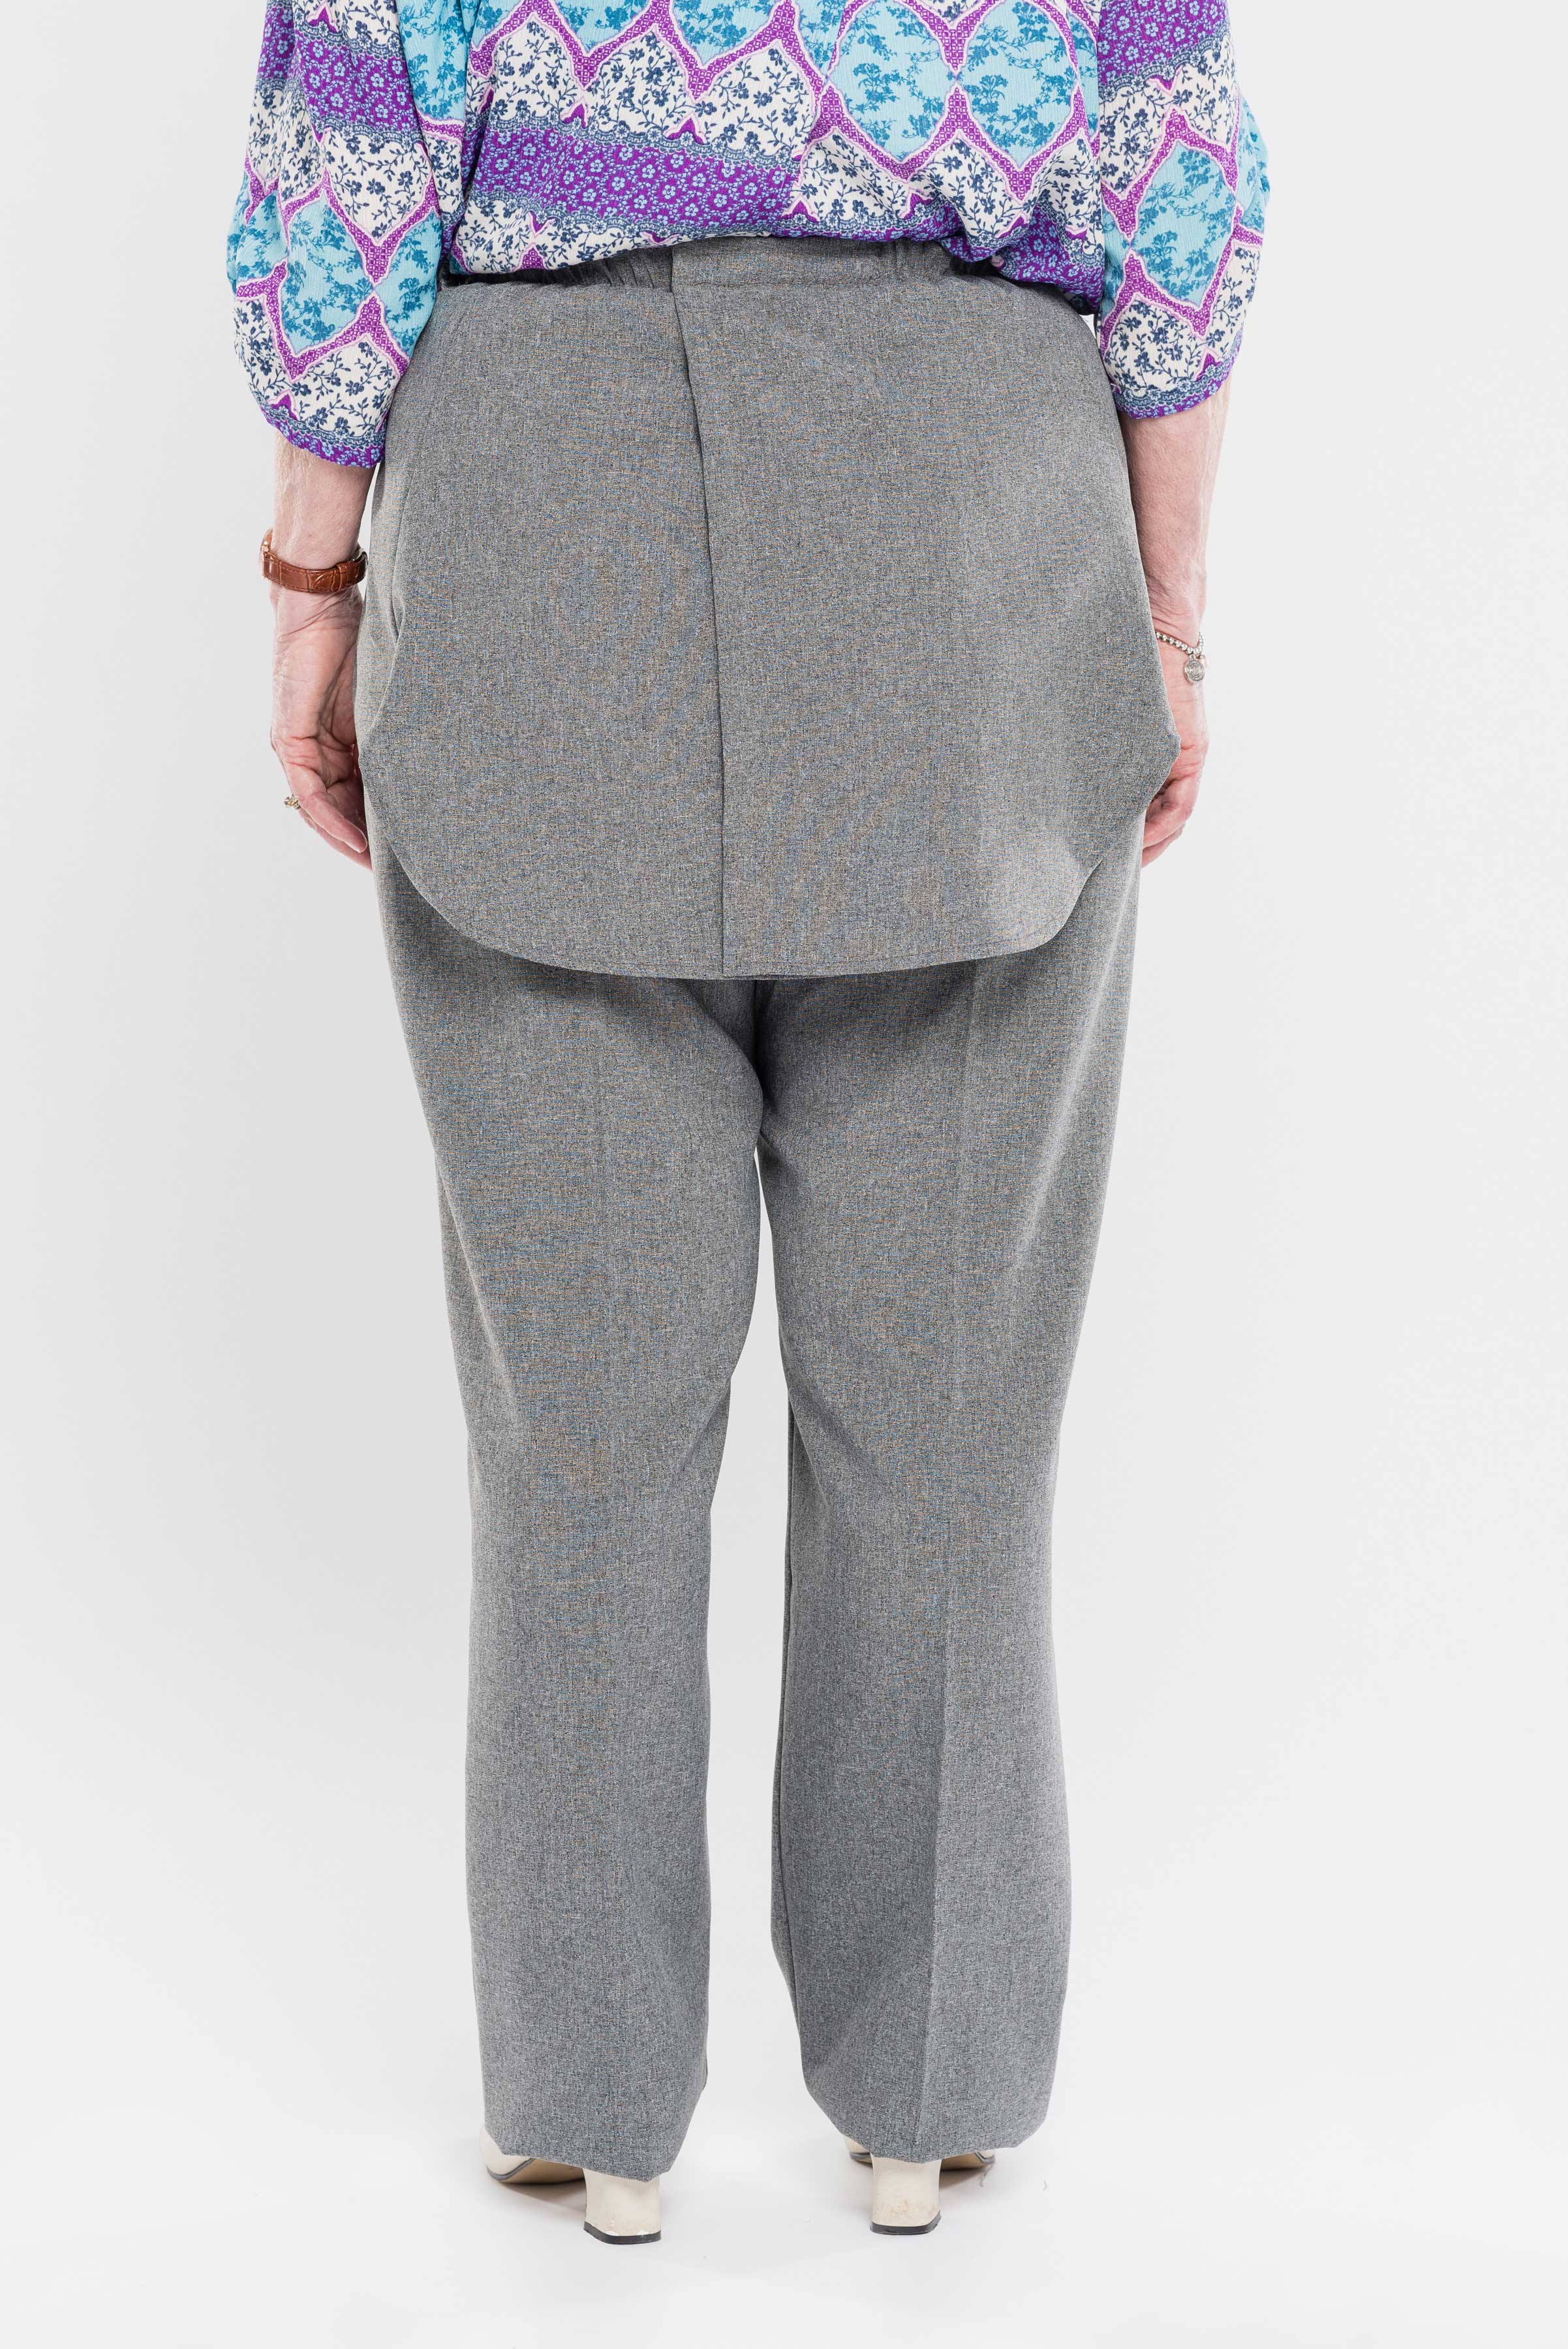 Pantalon adapté sans siège en polyester pour femme - Confort